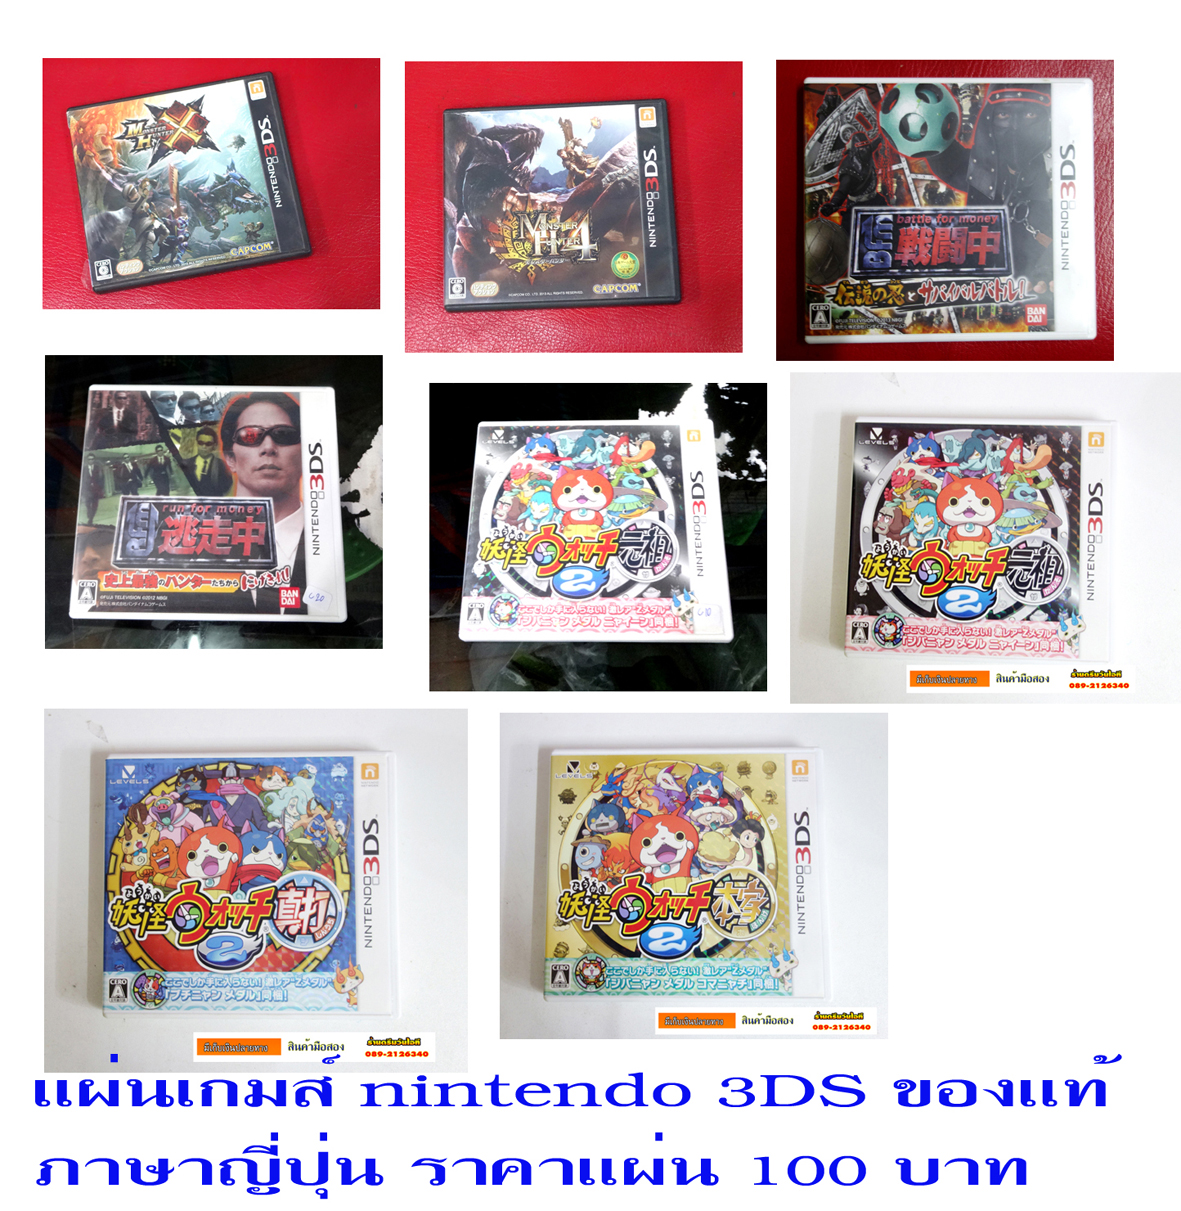 ขายแผ่นเกมส์ของแท้ NINTENDO 3DS เกมส์ตามปก  สินค้าใช้งานมาแล้วสภาพดีโซนเจแปนภาษาญี่ปุ่นเอาแผ่นไหนทักมาได้ครับ